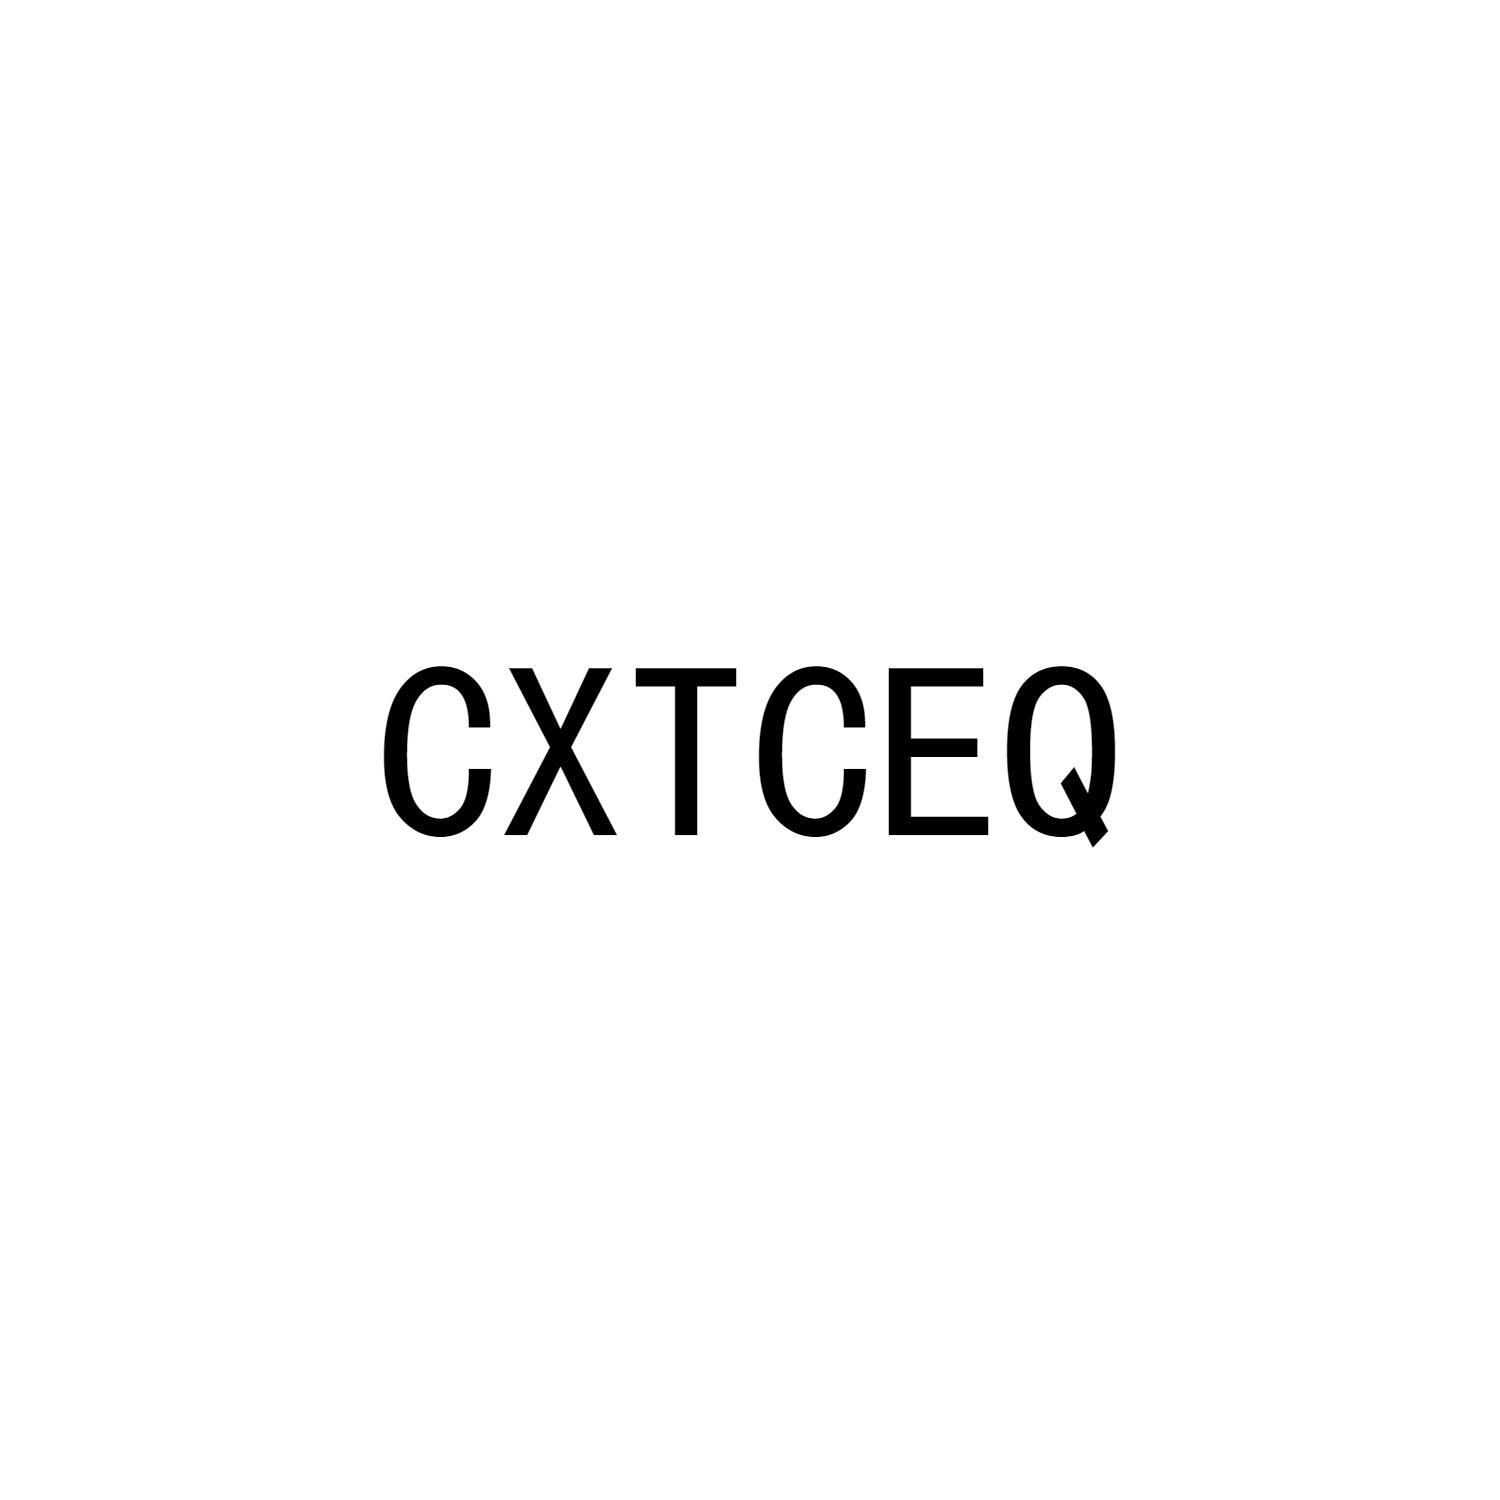 CXTCEQ